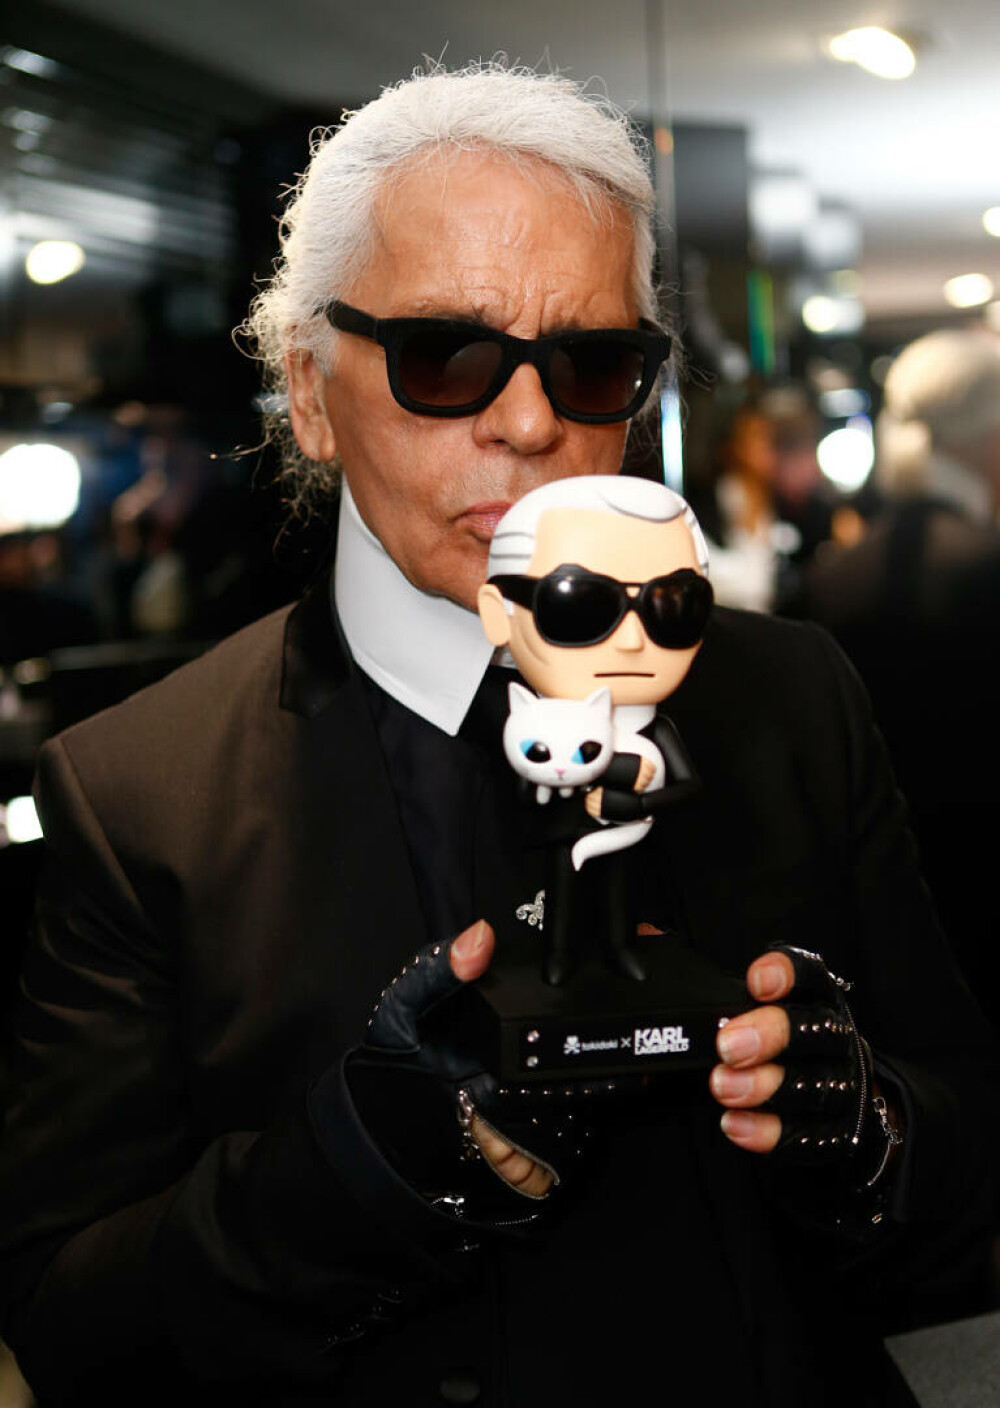 Imagini de colecție cu Karl Lagerfeld. Renumitul creator de modă ar fi împlinit 90 de ani | GALERIE FOTO - Imaginea 25